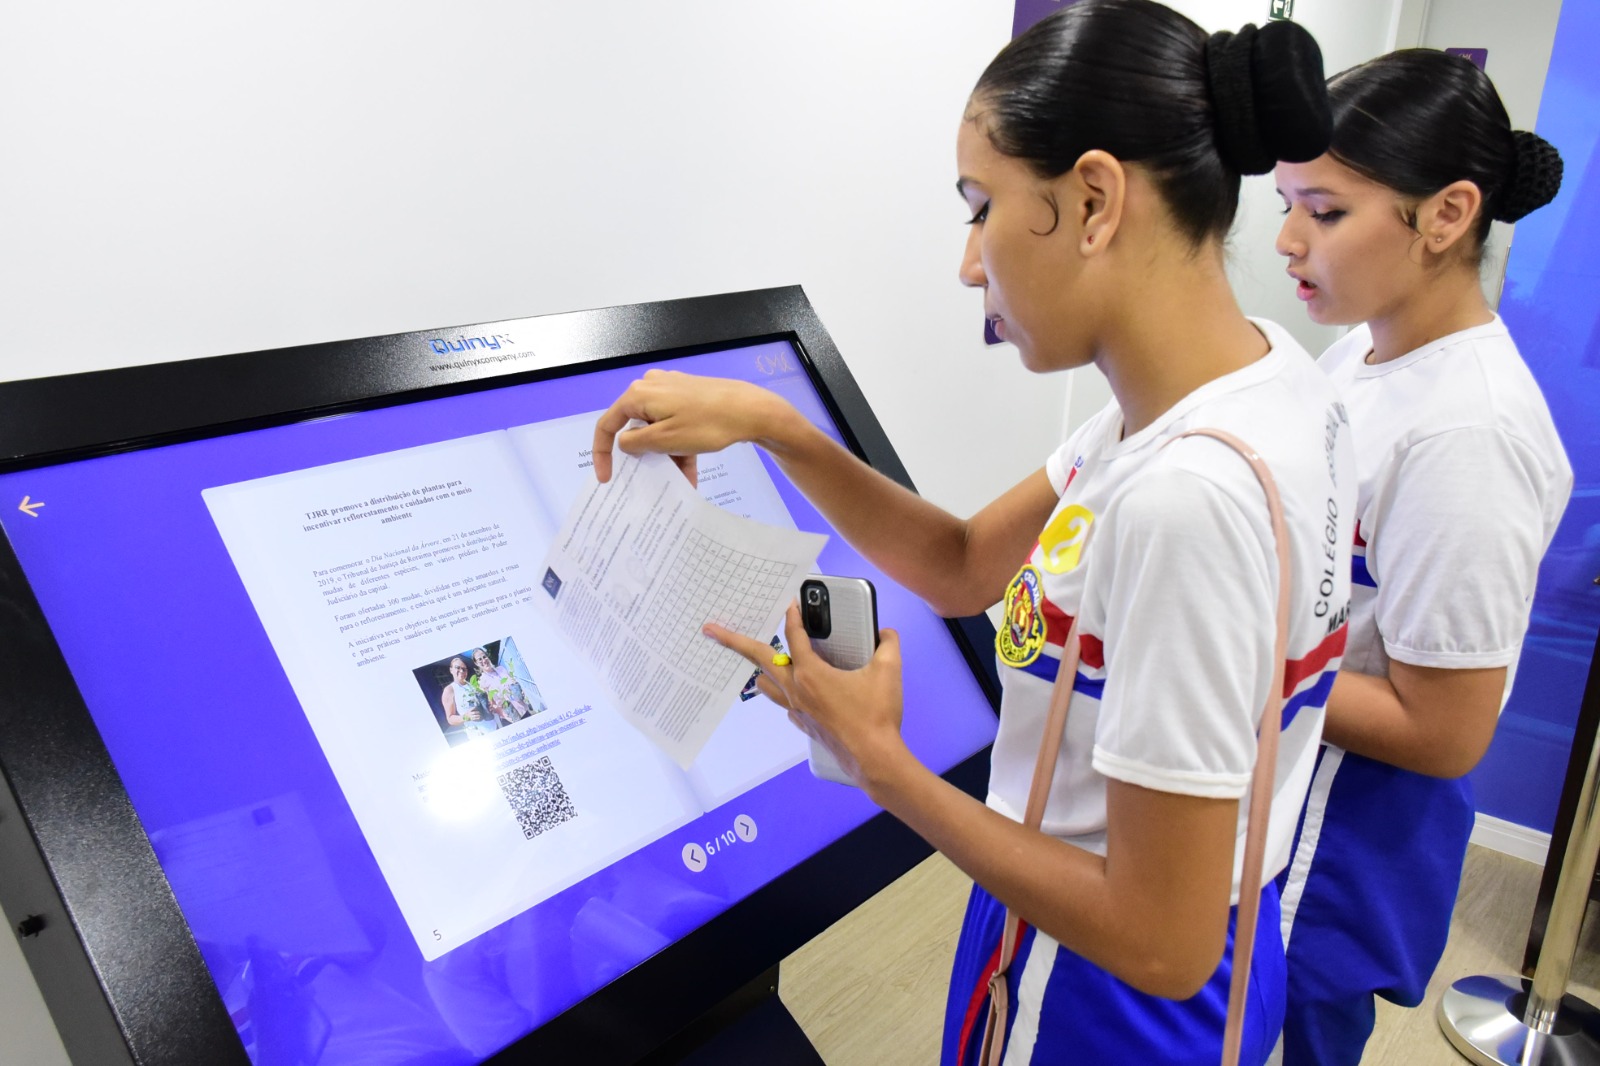  Imagem colorida mostra  duas alunas do Colégio Estadual Militarizado Maria Sônia de Brito Oliva em frente a um painel digital.